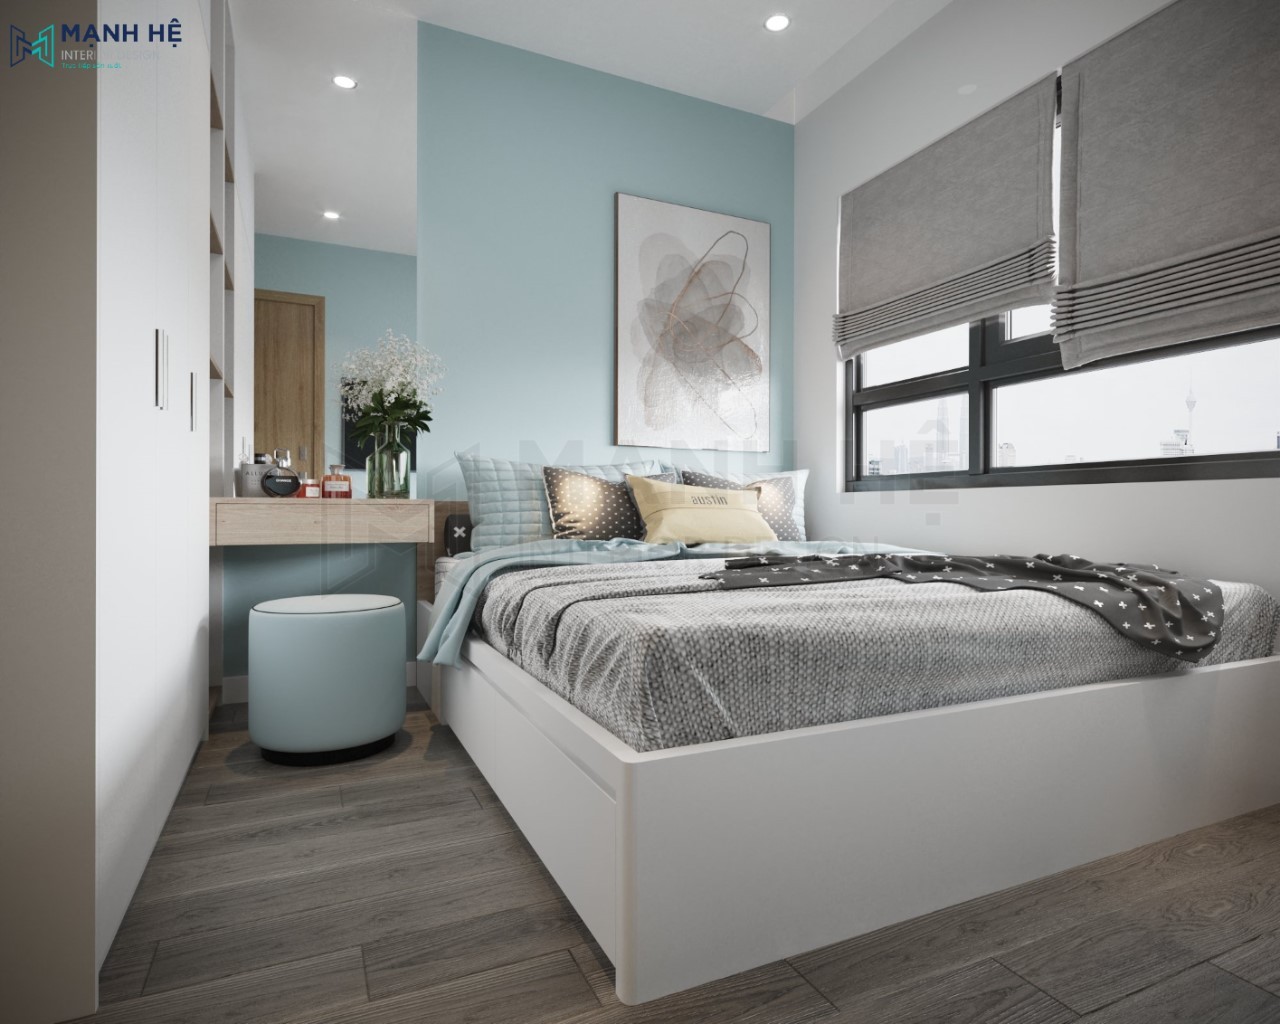 Thiết kế nội thất phòng ngủ màu xanh nhạt nhẹ nhàng ấm áp